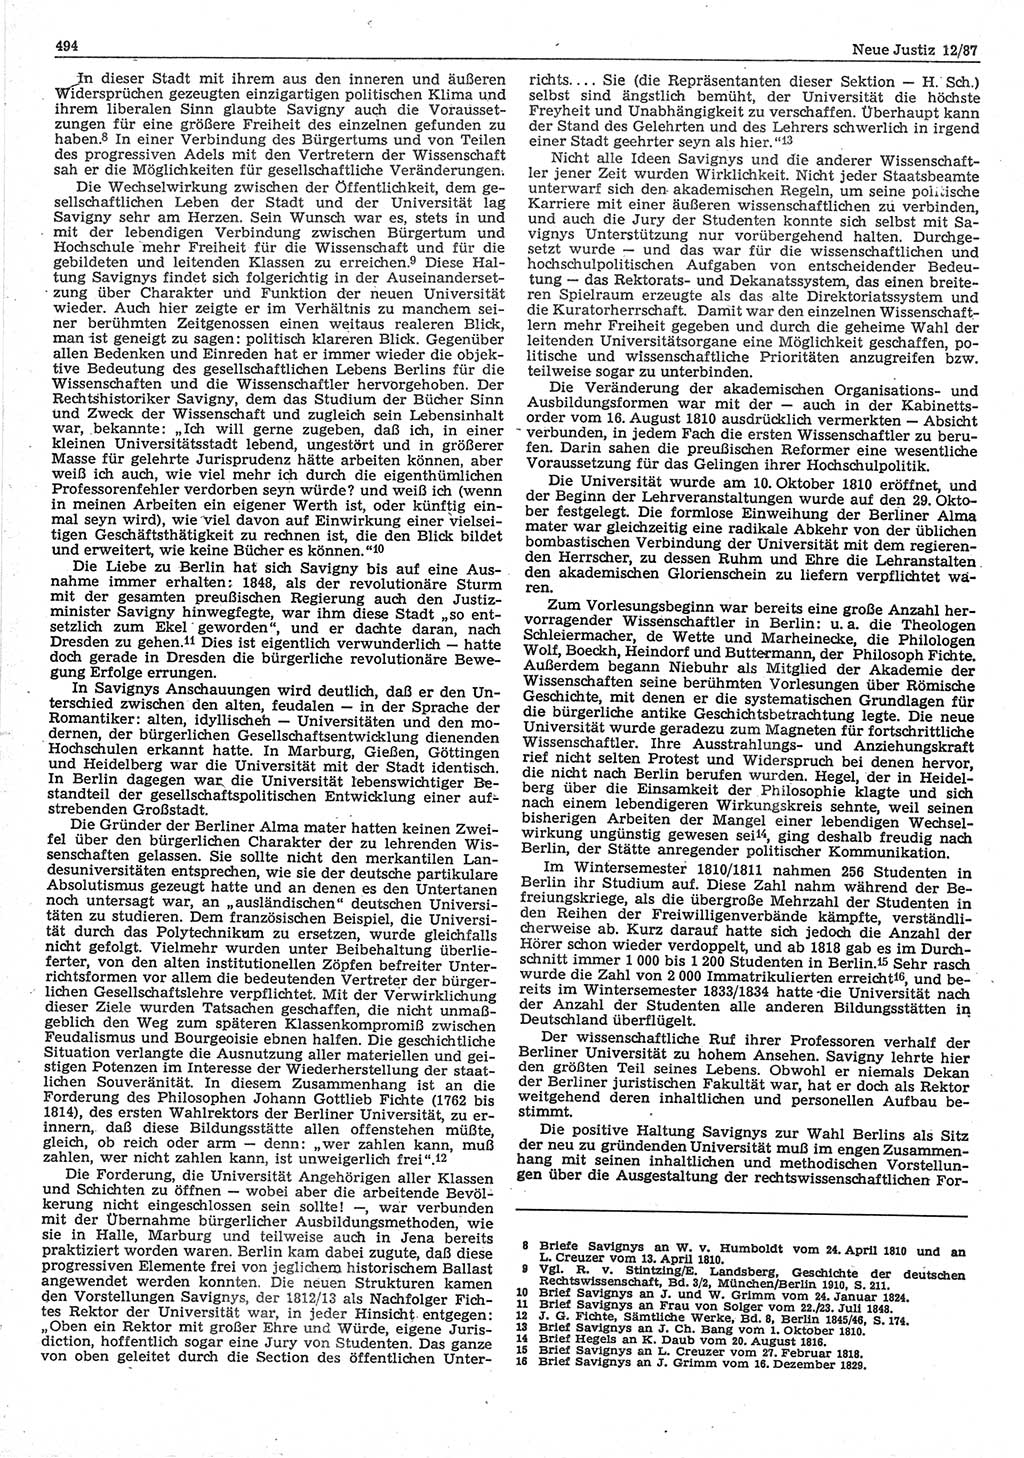 Neue Justiz (NJ), Zeitschrift für sozialistisches Recht und Gesetzlichkeit [Deutsche Demokratische Republik (DDR)], 41. Jahrgang 1987, Seite 494 (NJ DDR 1987, S. 494)